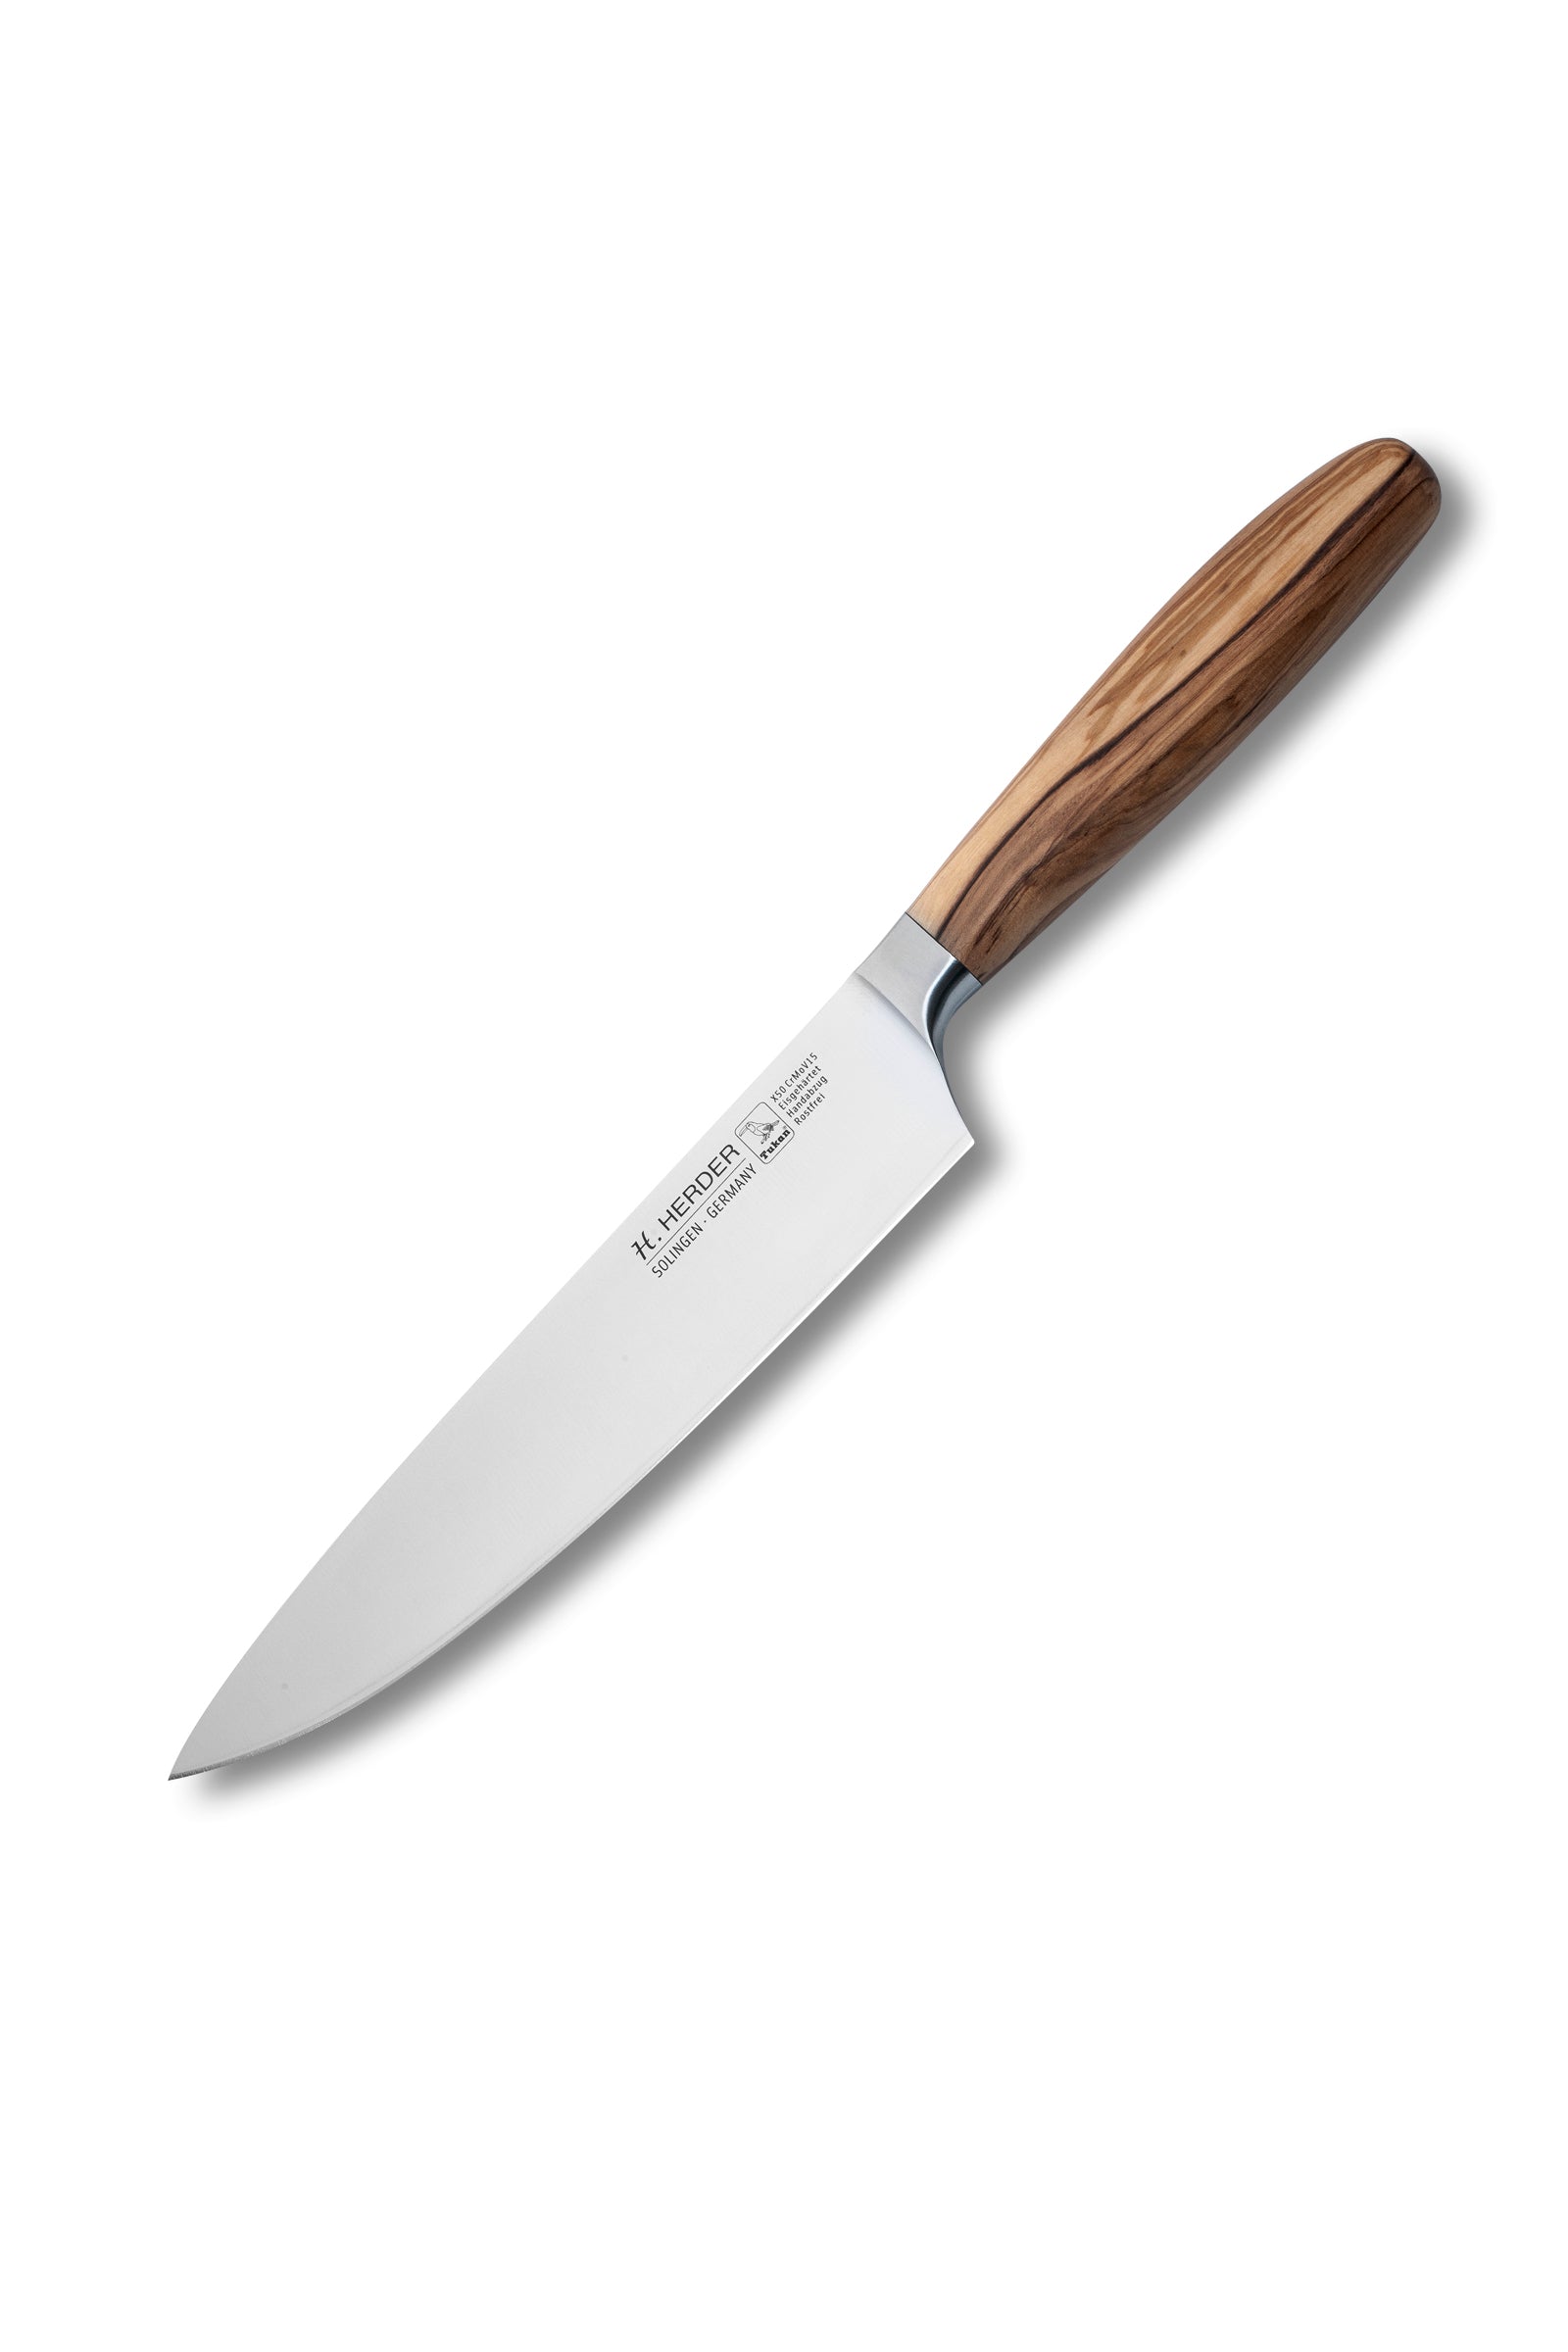 Cuchillo de cocinero Eterno, madera de olivo, longitud de la hoja 21cm, forjado